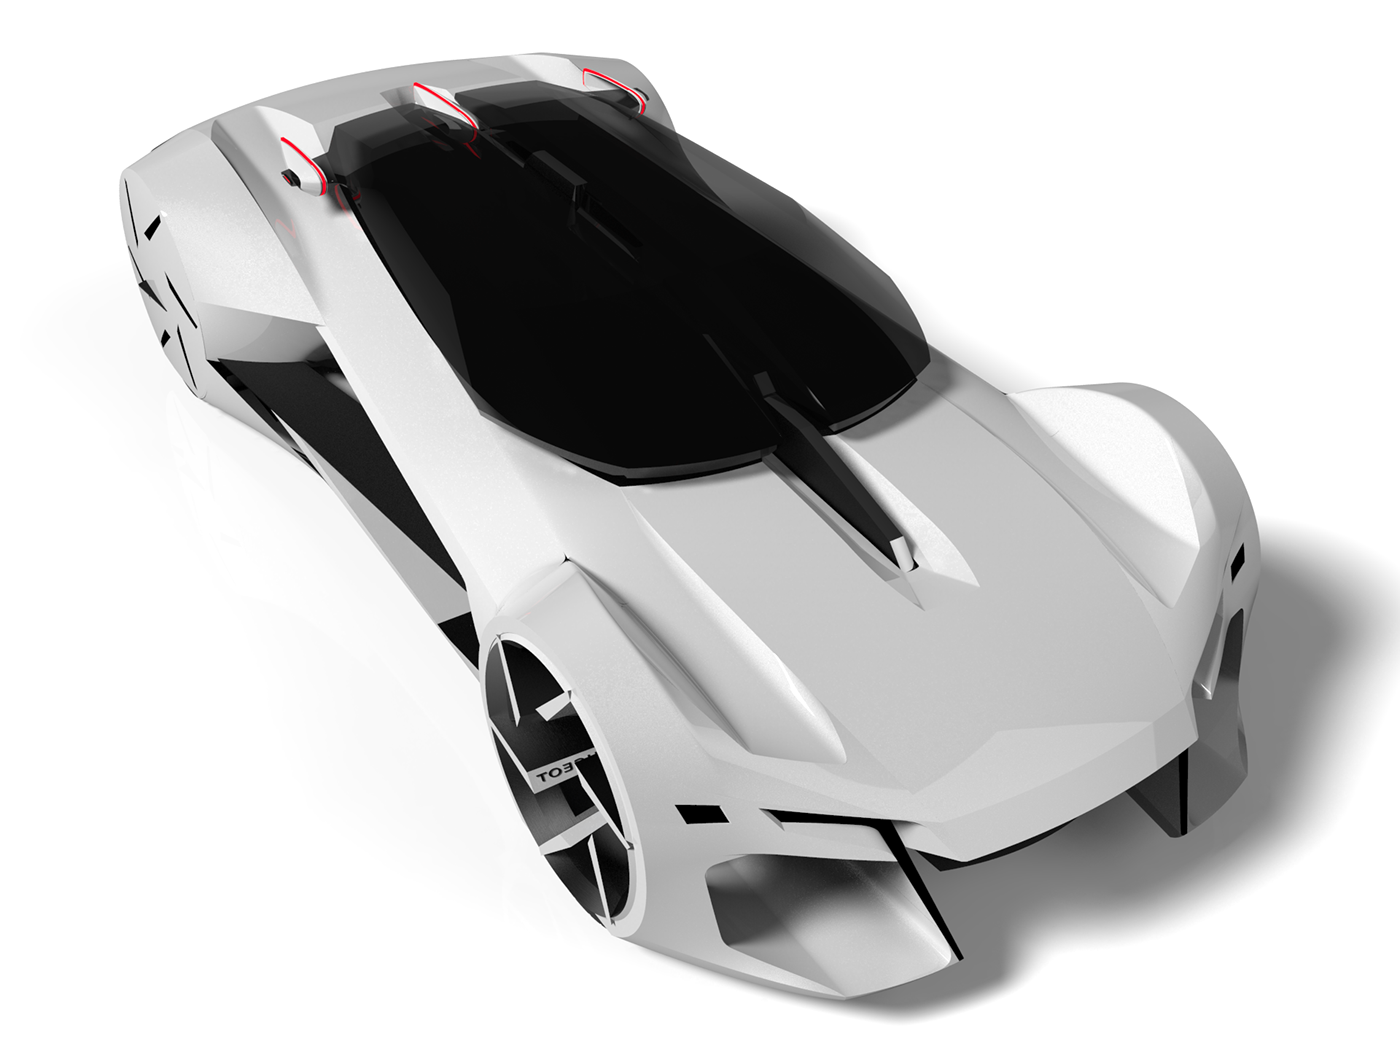 PEUGEOT car car design Automotive design Transportation Design concept concept car Autonomous